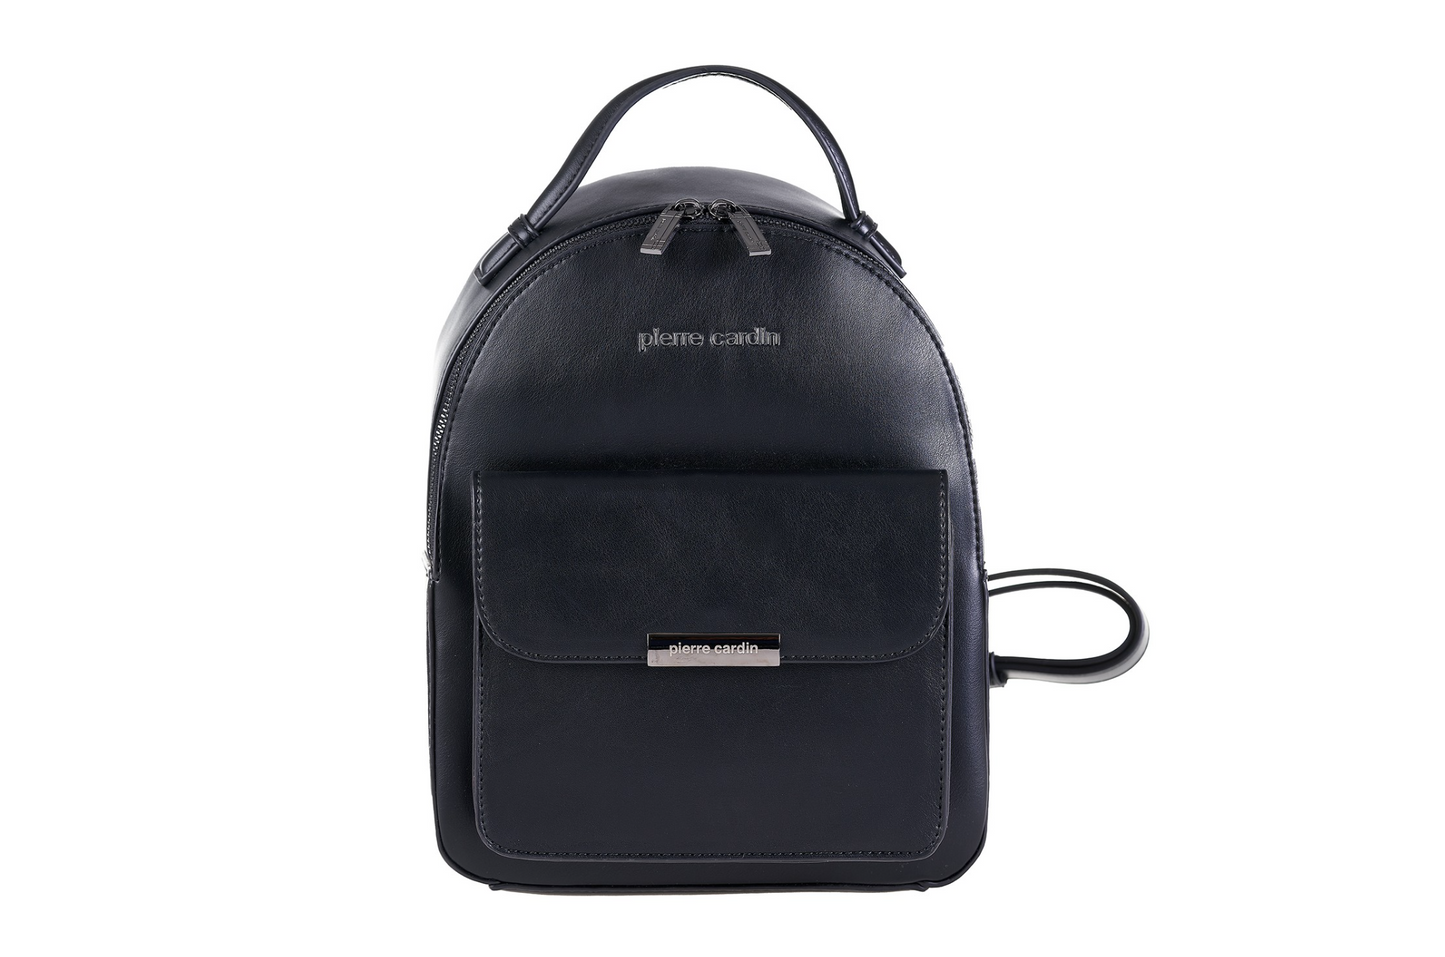 Pierre Cardin mint backpack for women